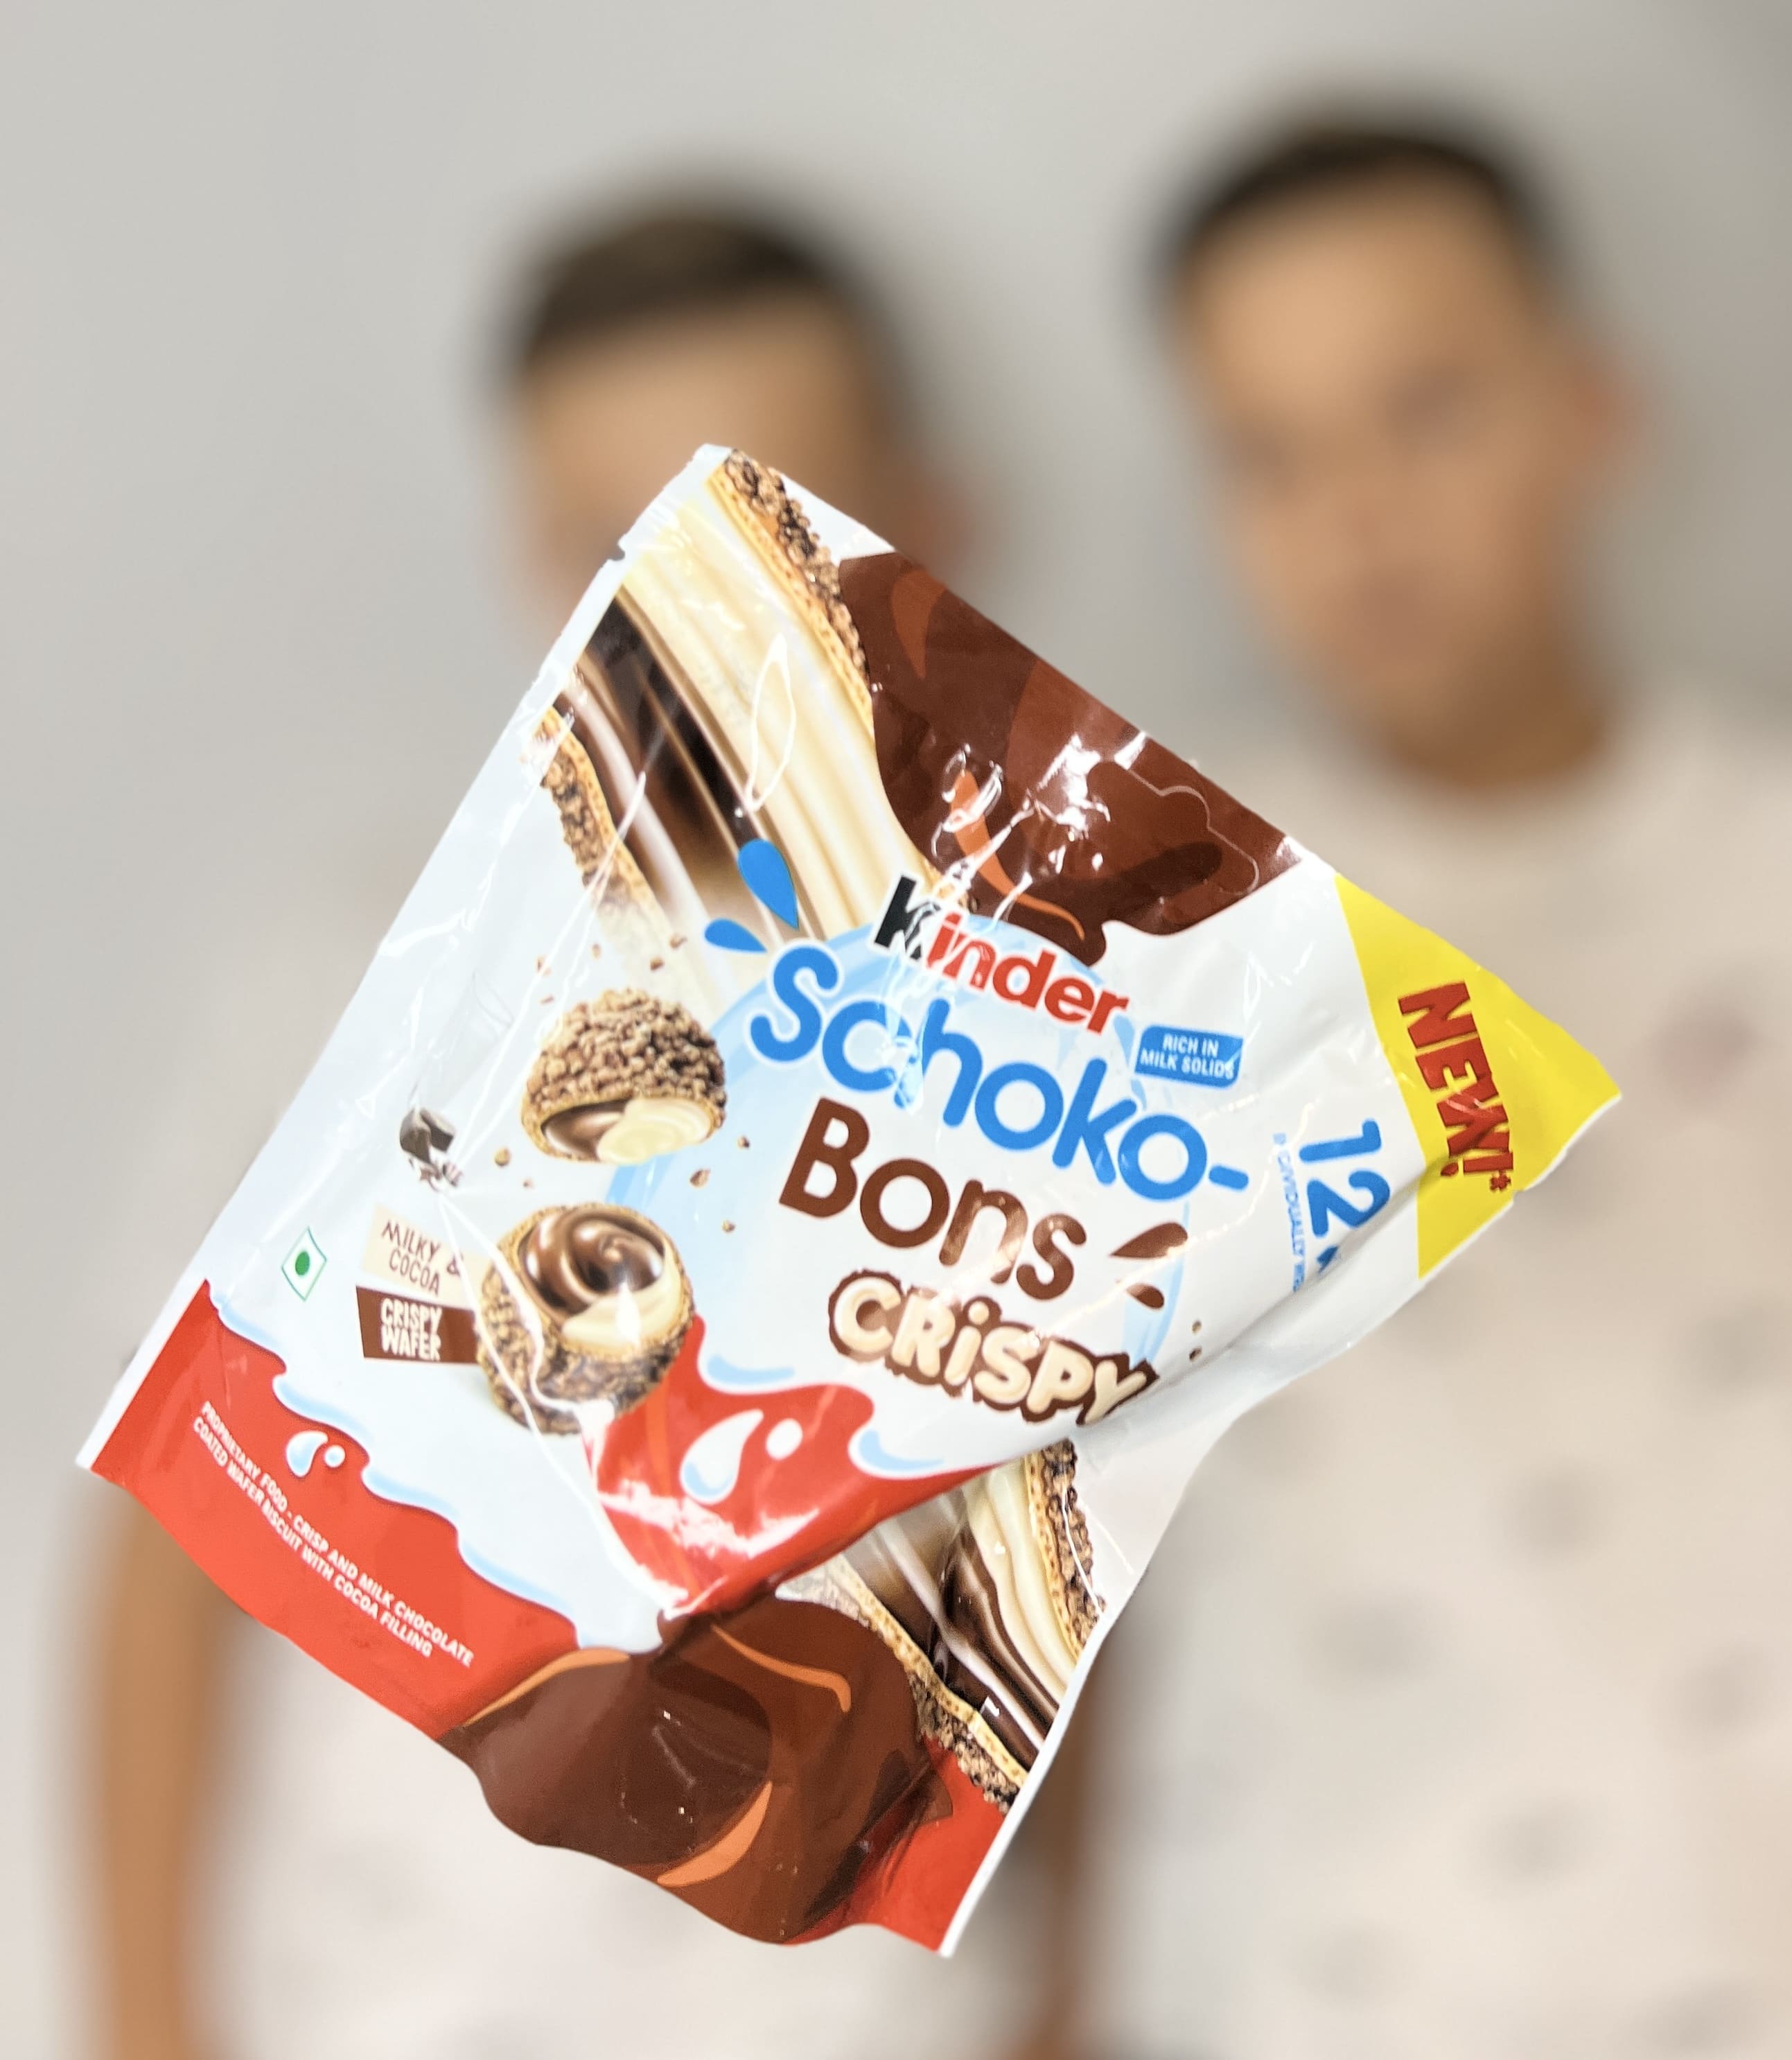 Köstliche Knusperperlen: Kinder Schoko Bons Crispy 67,2g aus Dubai